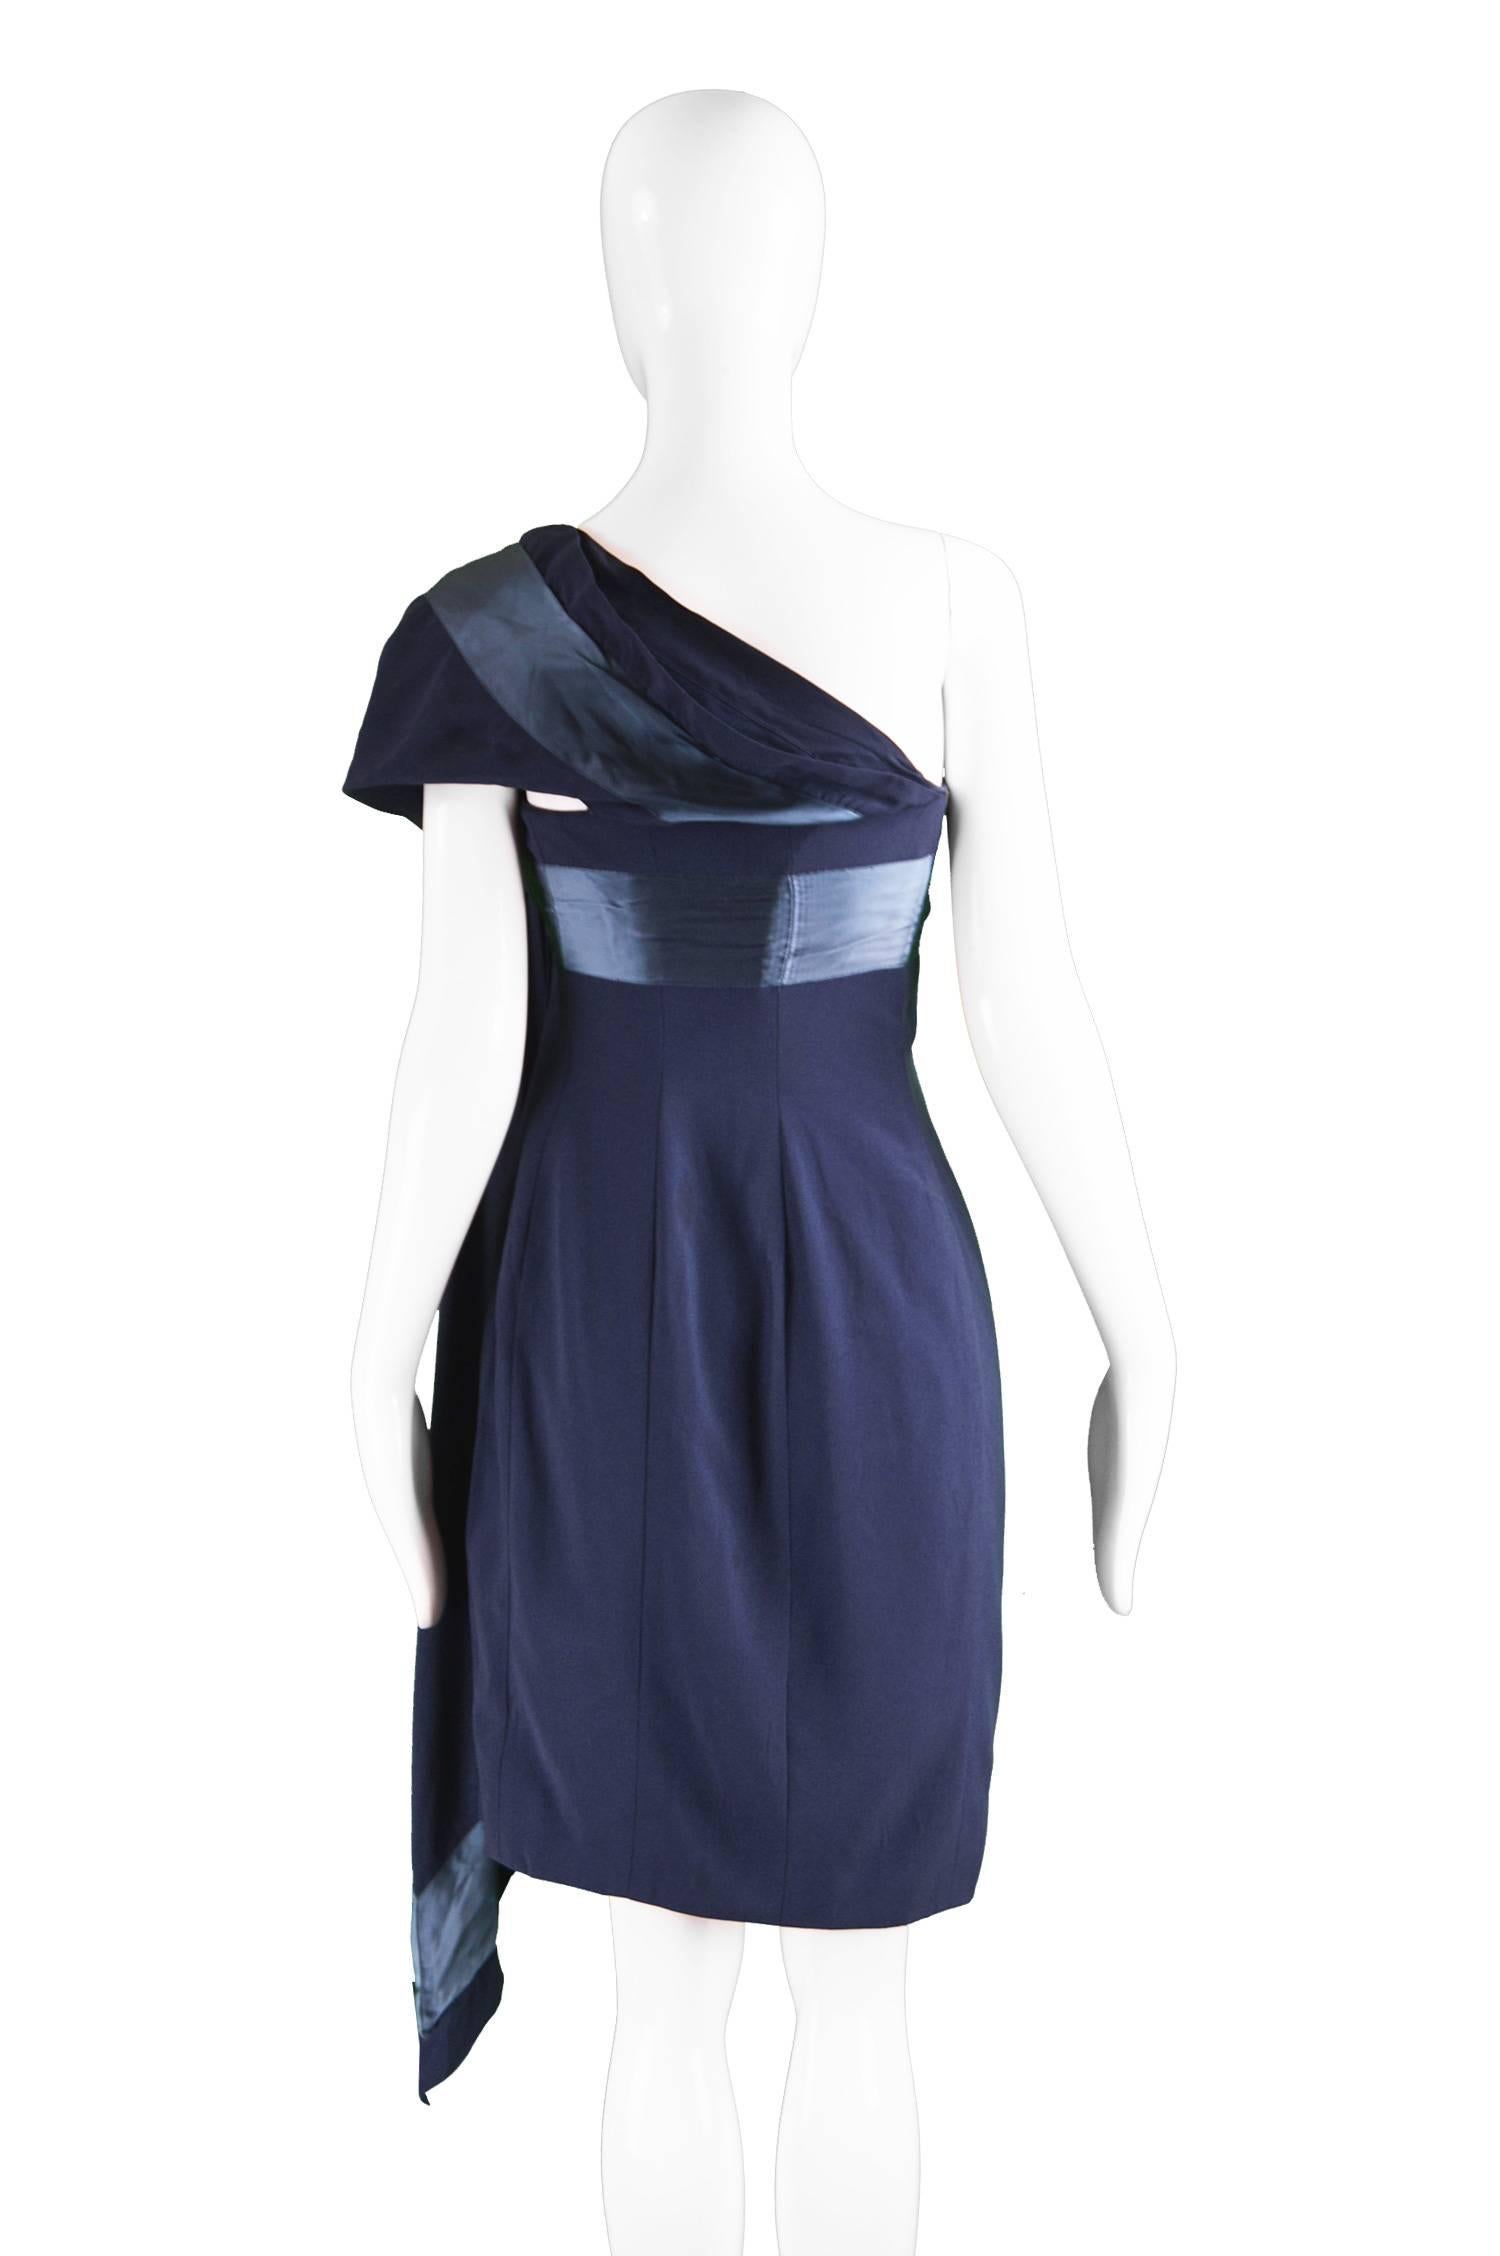 Gianfranco Ferre Vintage Navy Blue Crepe and Satin Shoulder Train Dress, 1990s For Sale 1